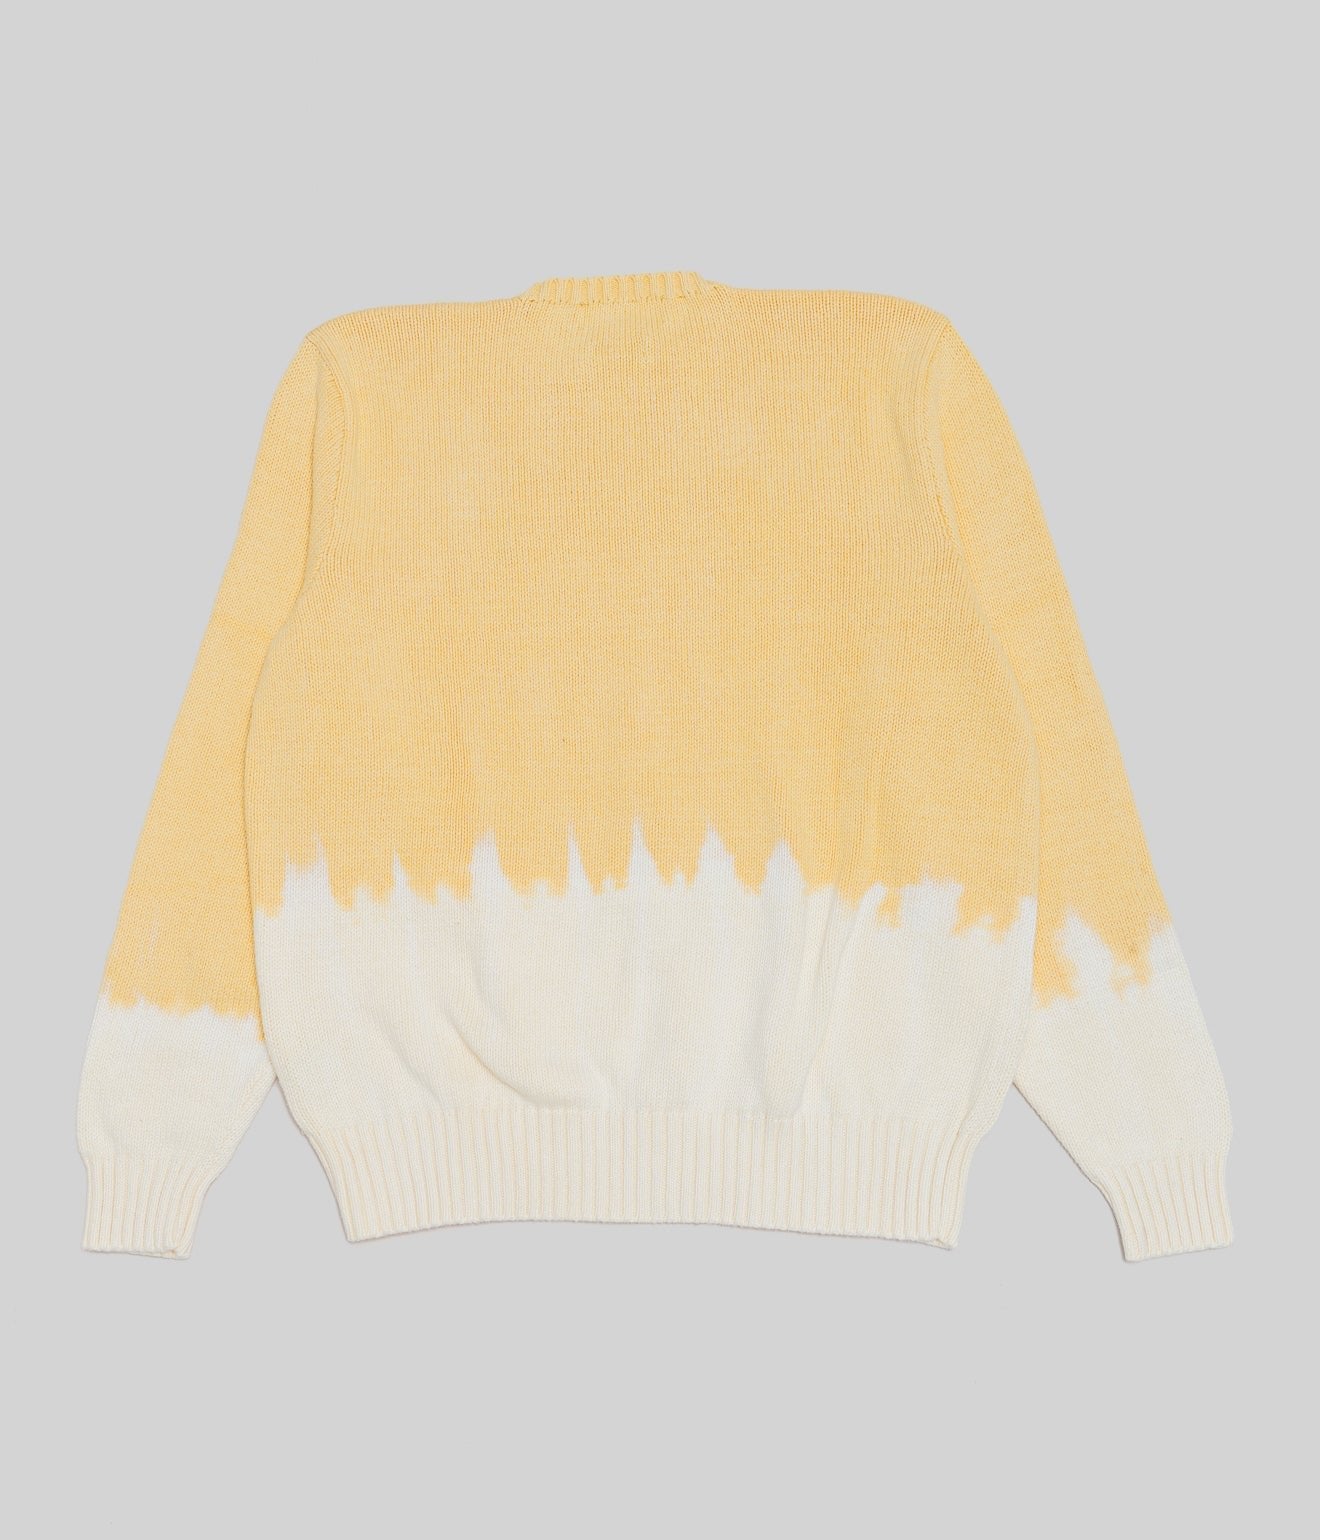 r "Tie-dye cotton sweater fire pattern" Yellow 1 - WEAREALLANIMALS